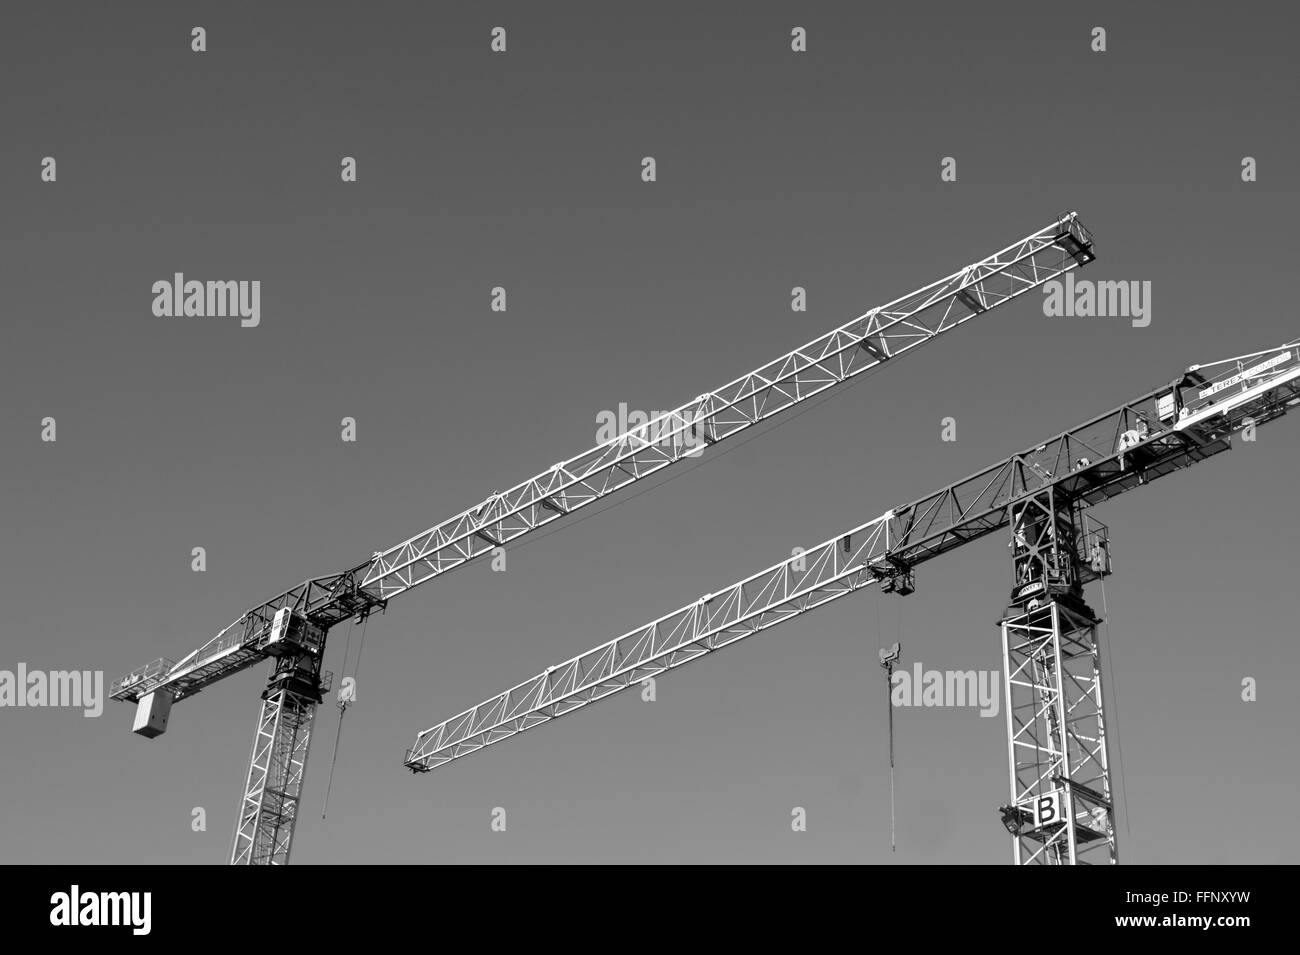 Schwarz / weiß Bild von zwei Turmdrehkrane Bau zeigen in entgegengesetzte Richtungen gegen einen klaren Himmel Stockfoto